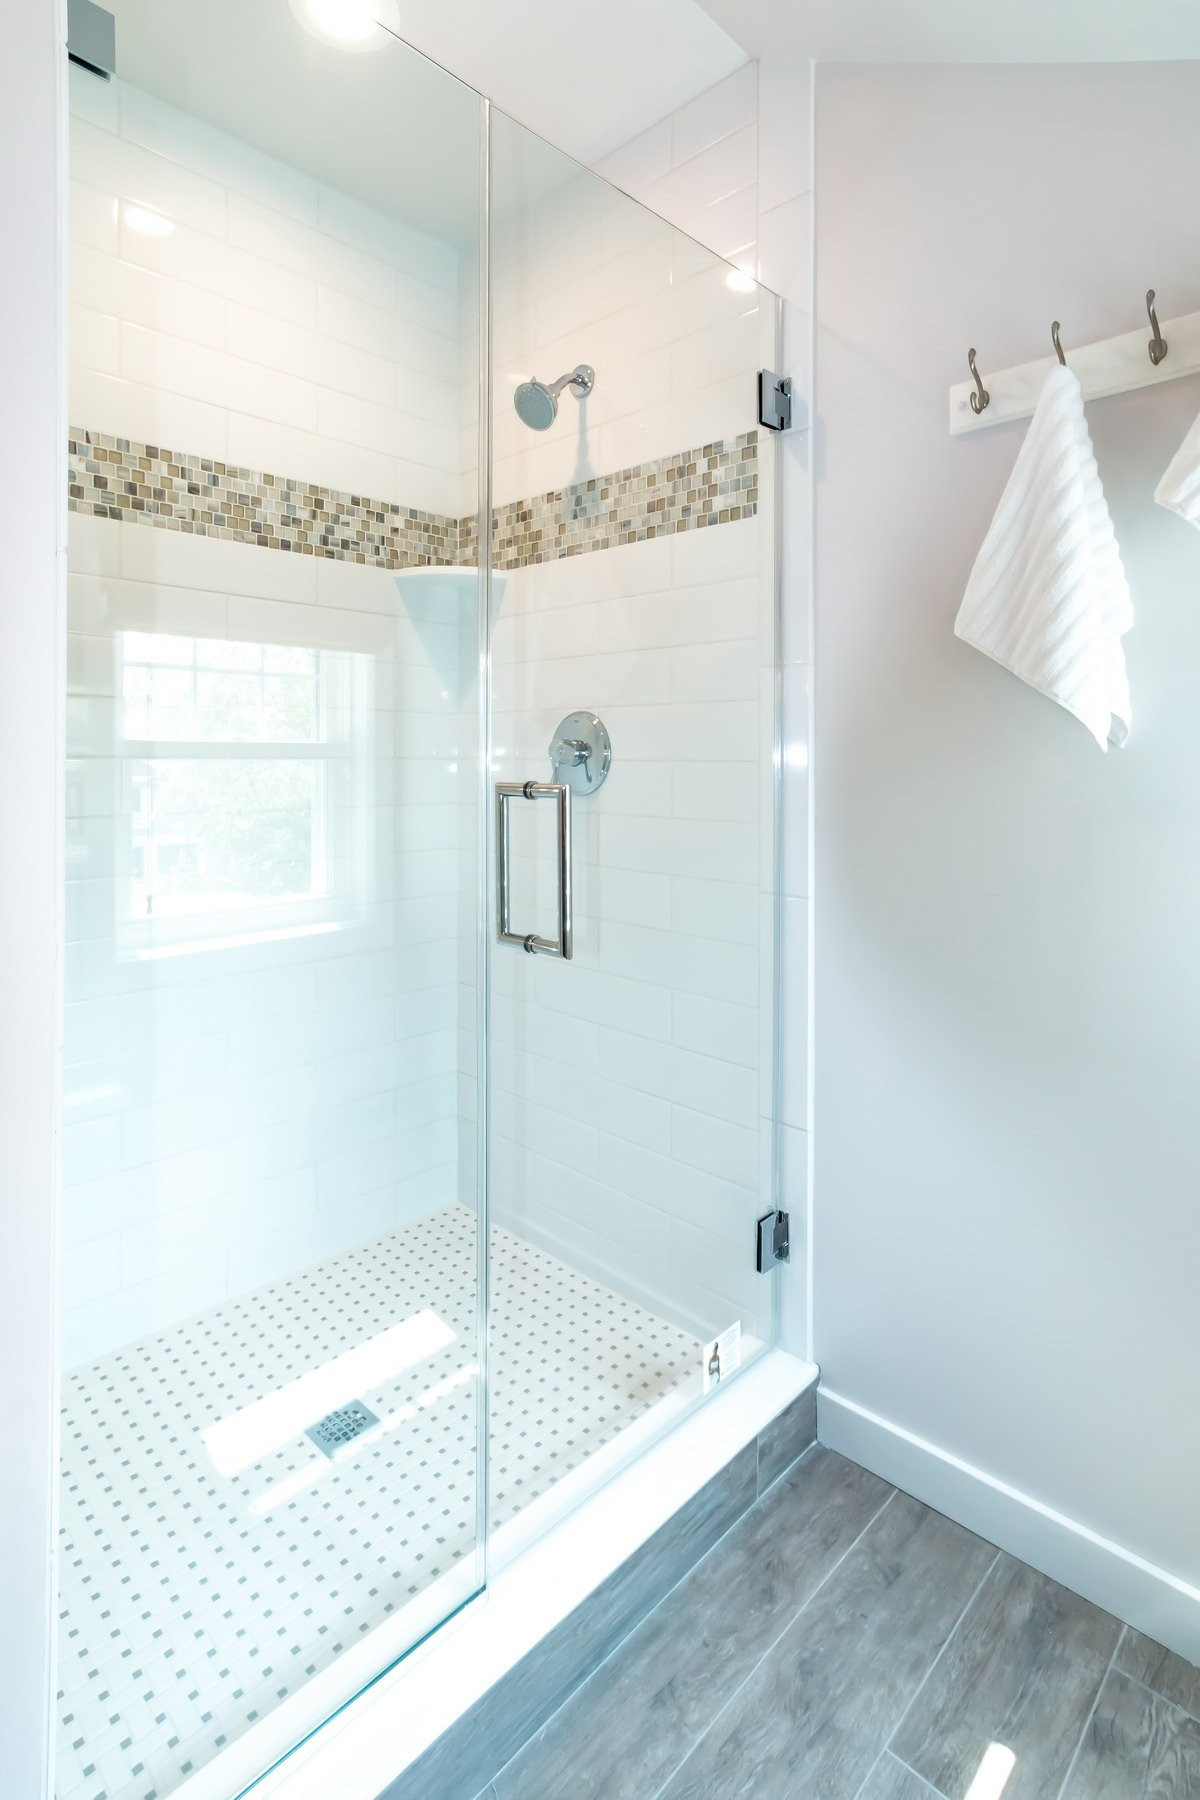 Bathroom Walk In Shower Ideas
 The Latest Walk In Shower Designs – Under Construction